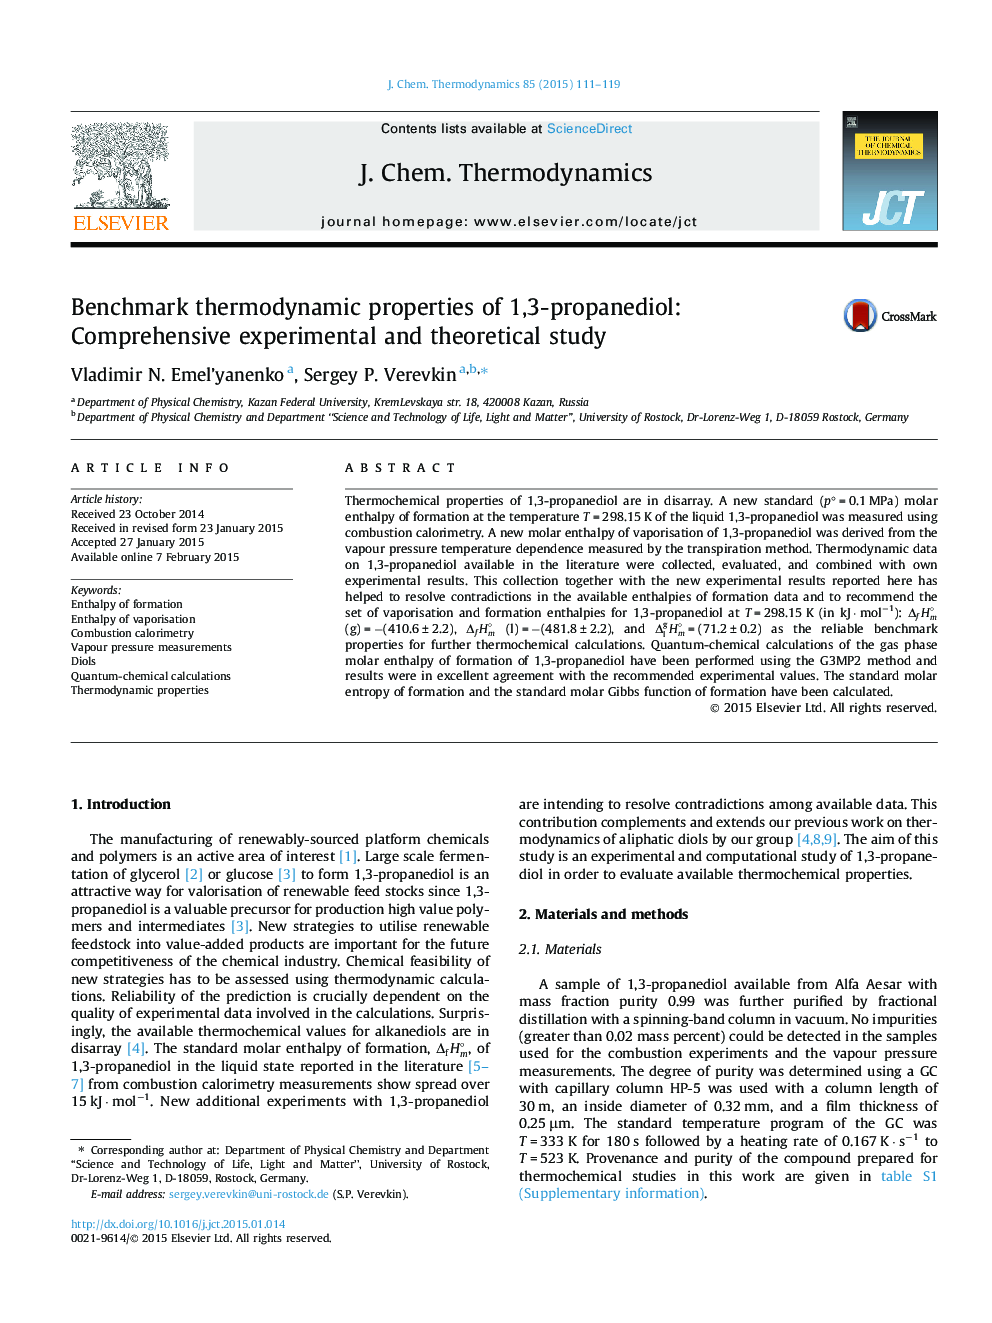 معیارهای ترمودینامیکی پروتئین 1،3-پروپانیدیول: مطالعه جامع آزمایشی و نظری 